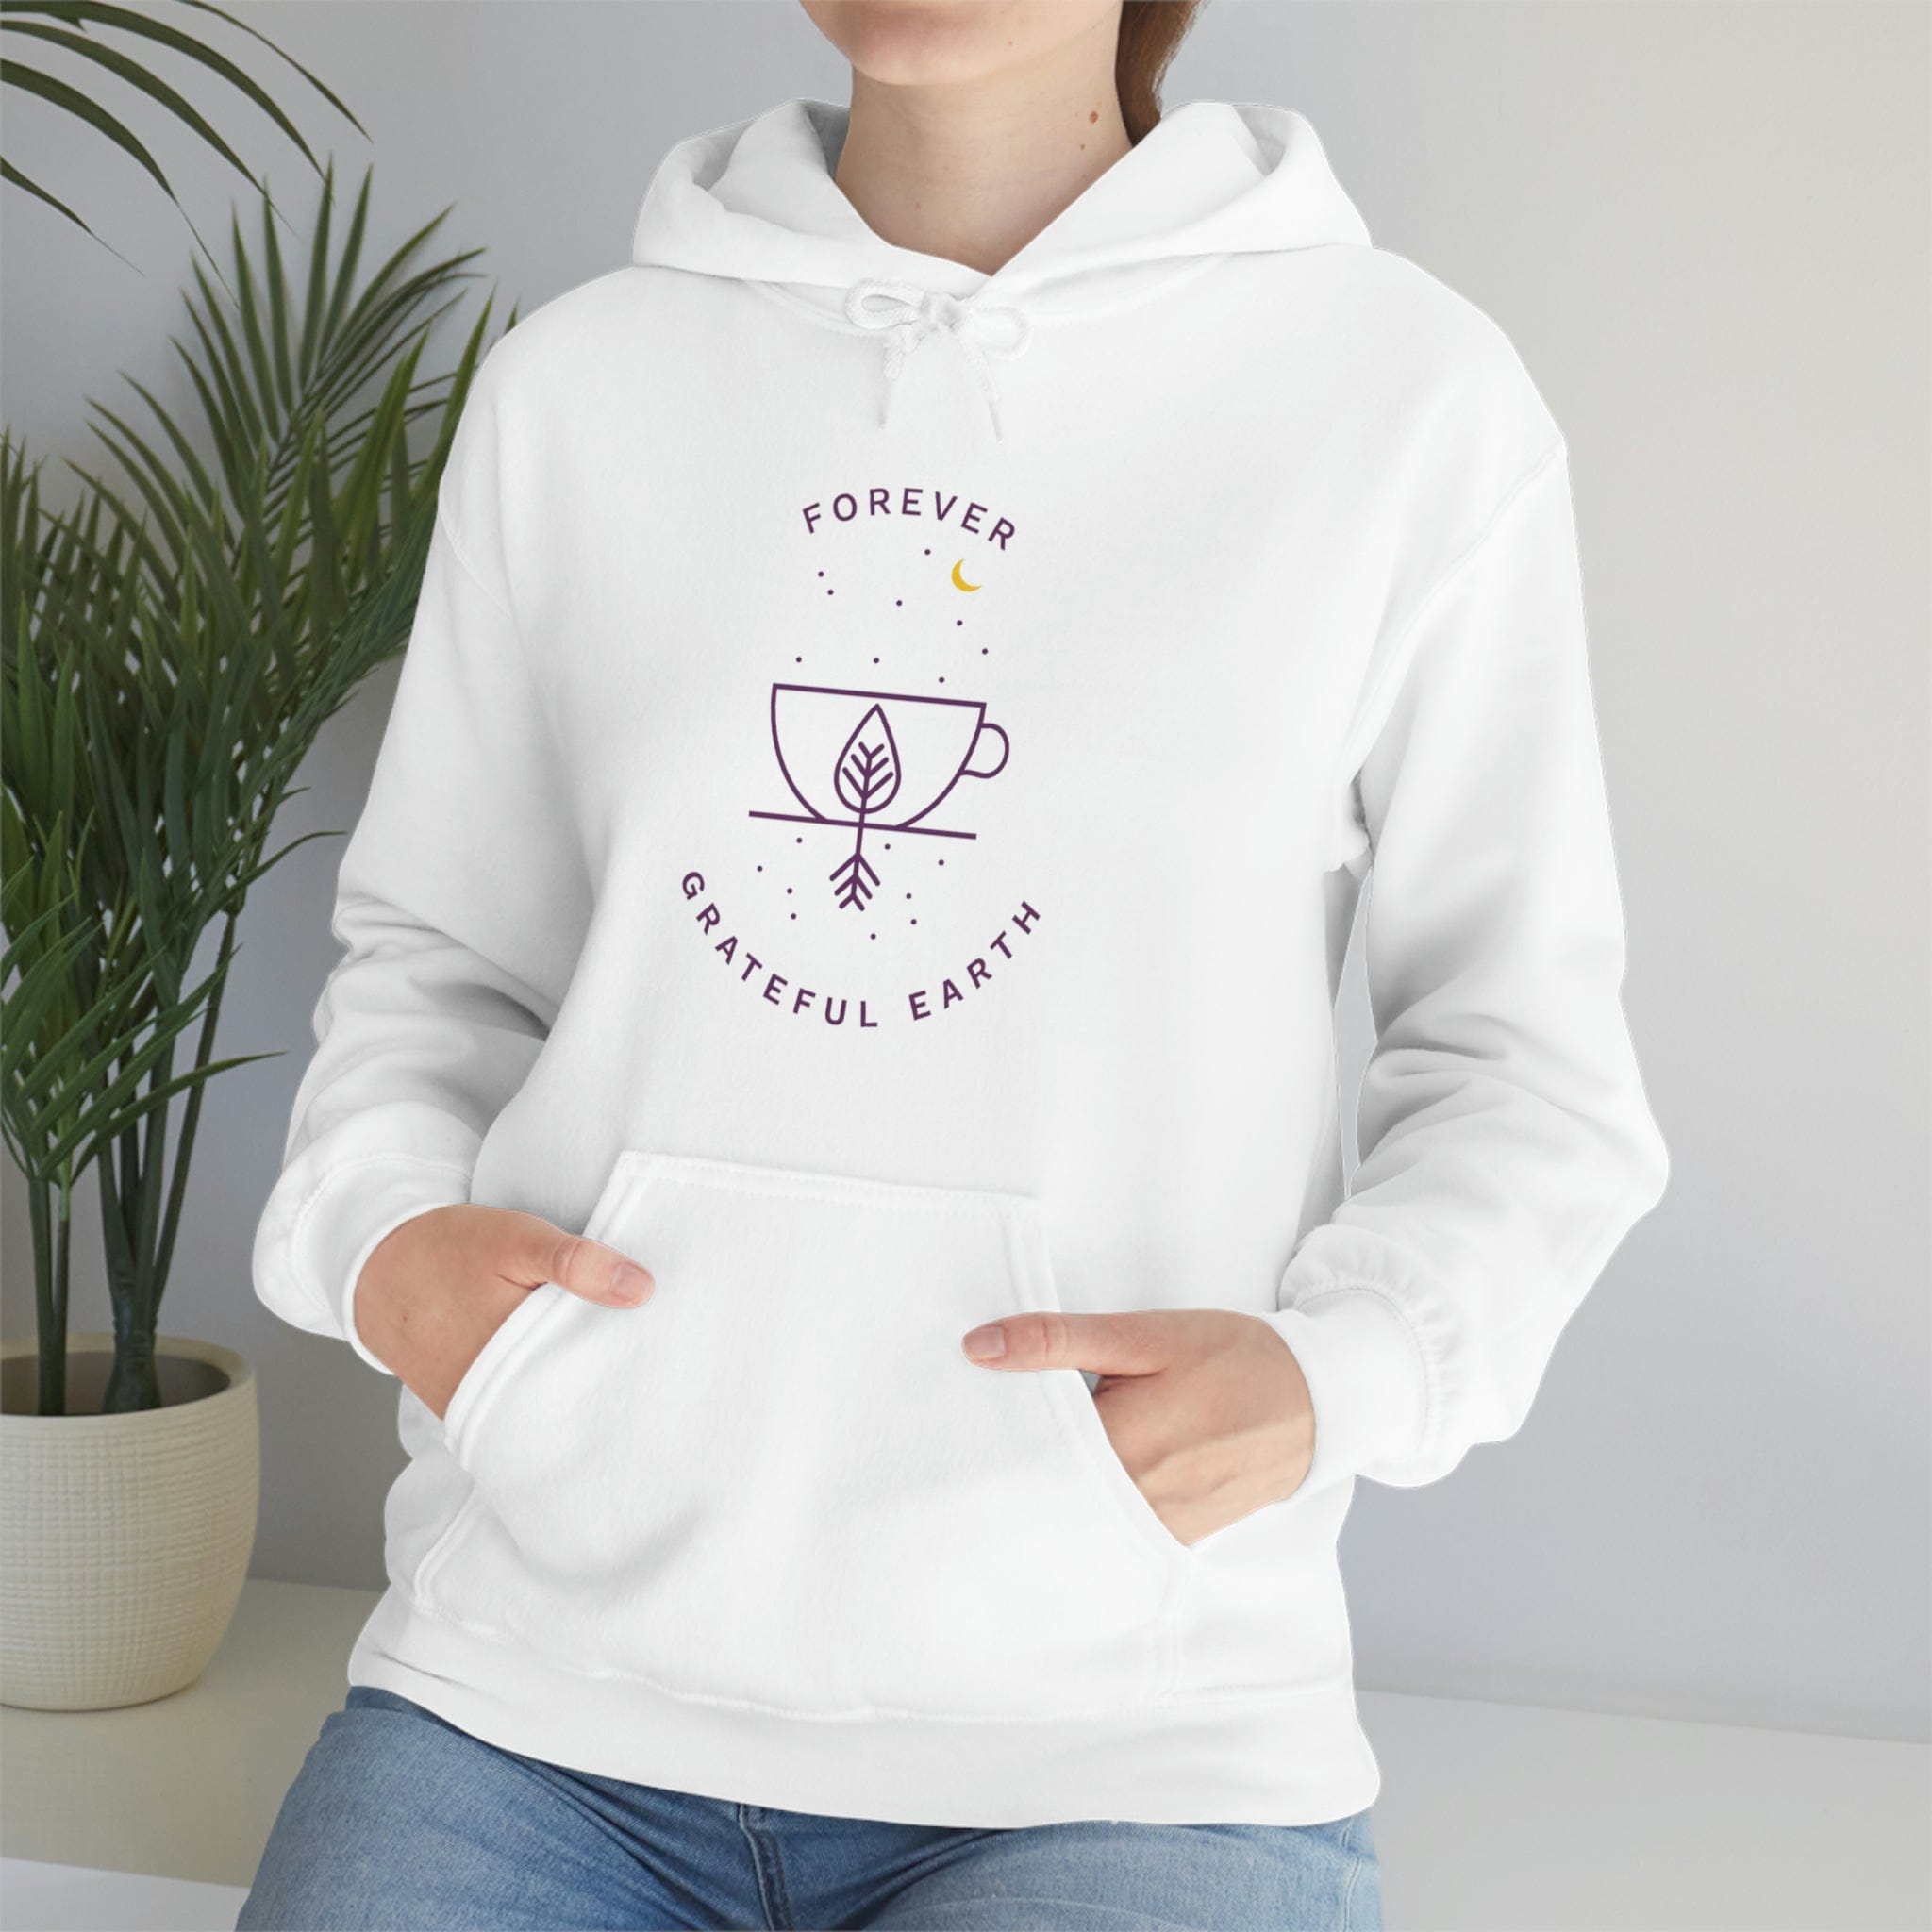 Cozy-Cutie Unisex Heavy Blend Hooded Sweatshirt